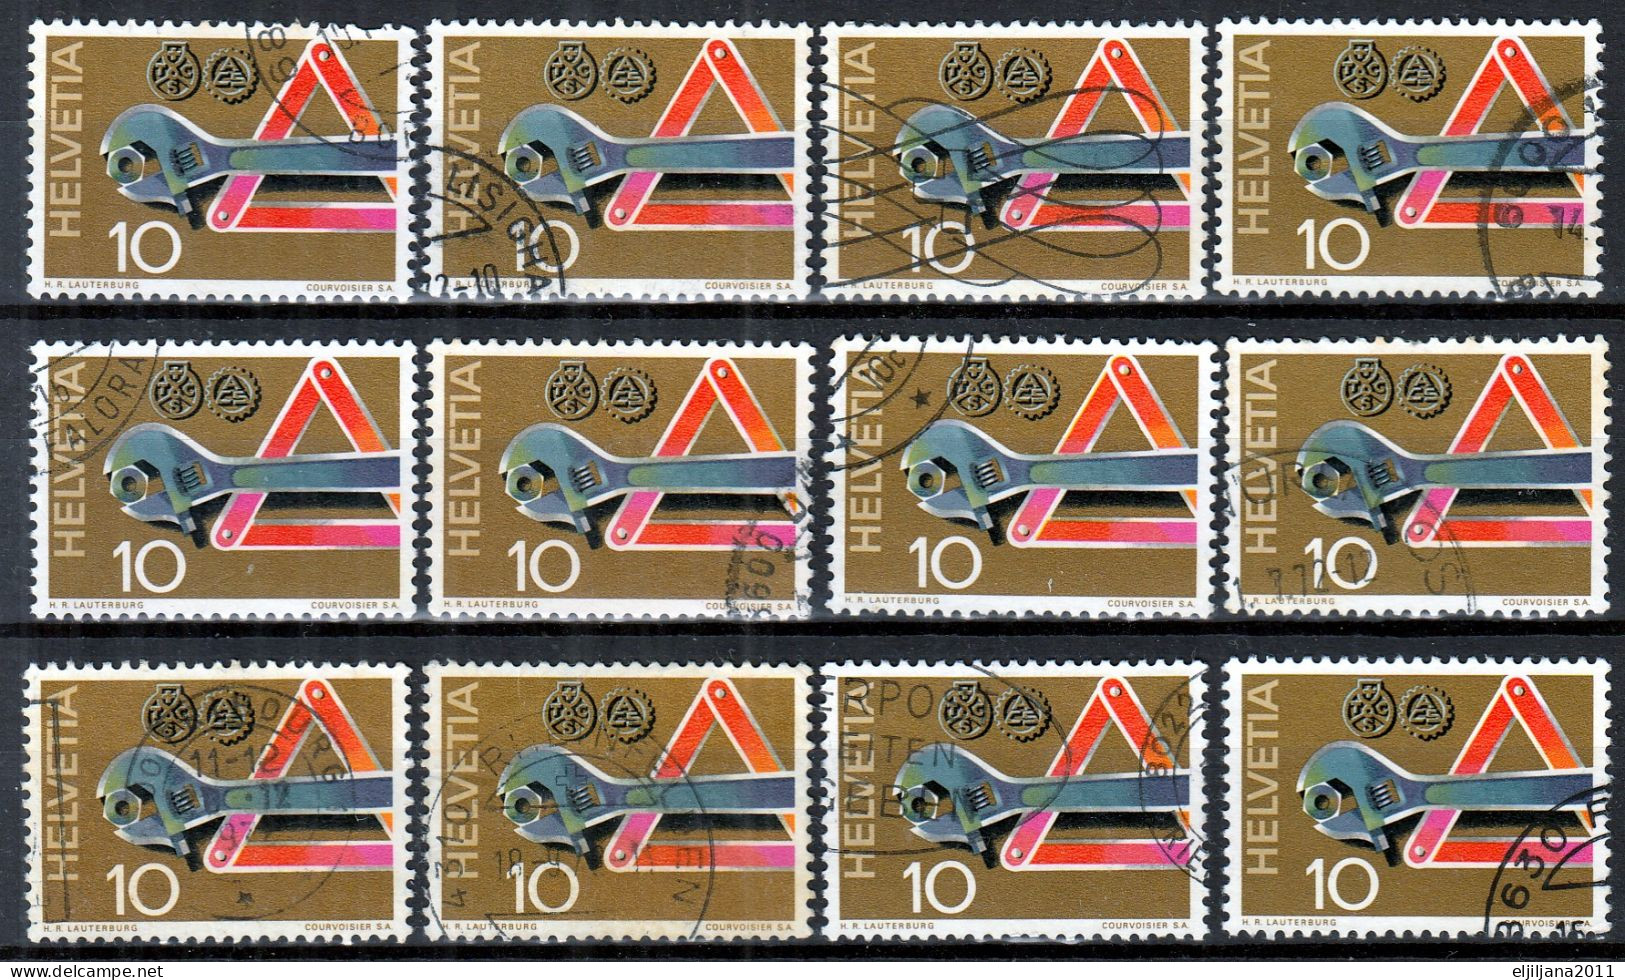 Switzerland / Helvetia / Schweiz / Suisse 1972 ⁕ Pannenhilfe Mi.964 ⁕ 12v Used - Used Stamps